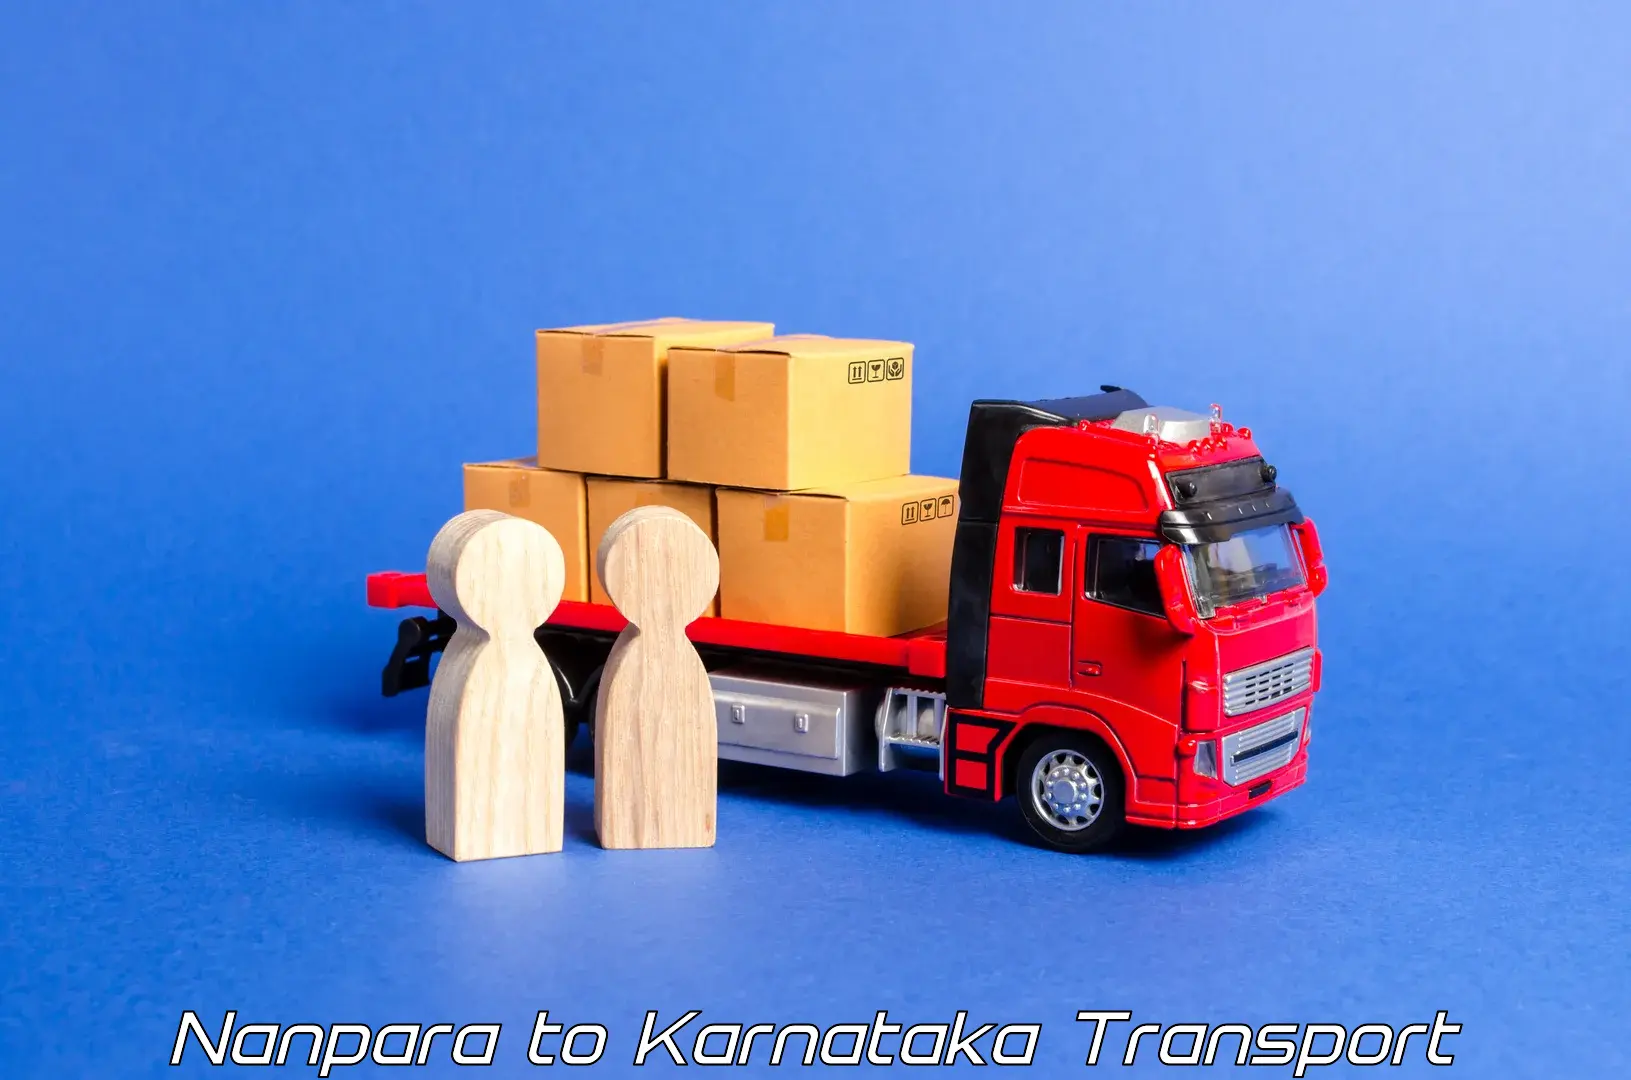 Air cargo transport services Nanpara to Hospet